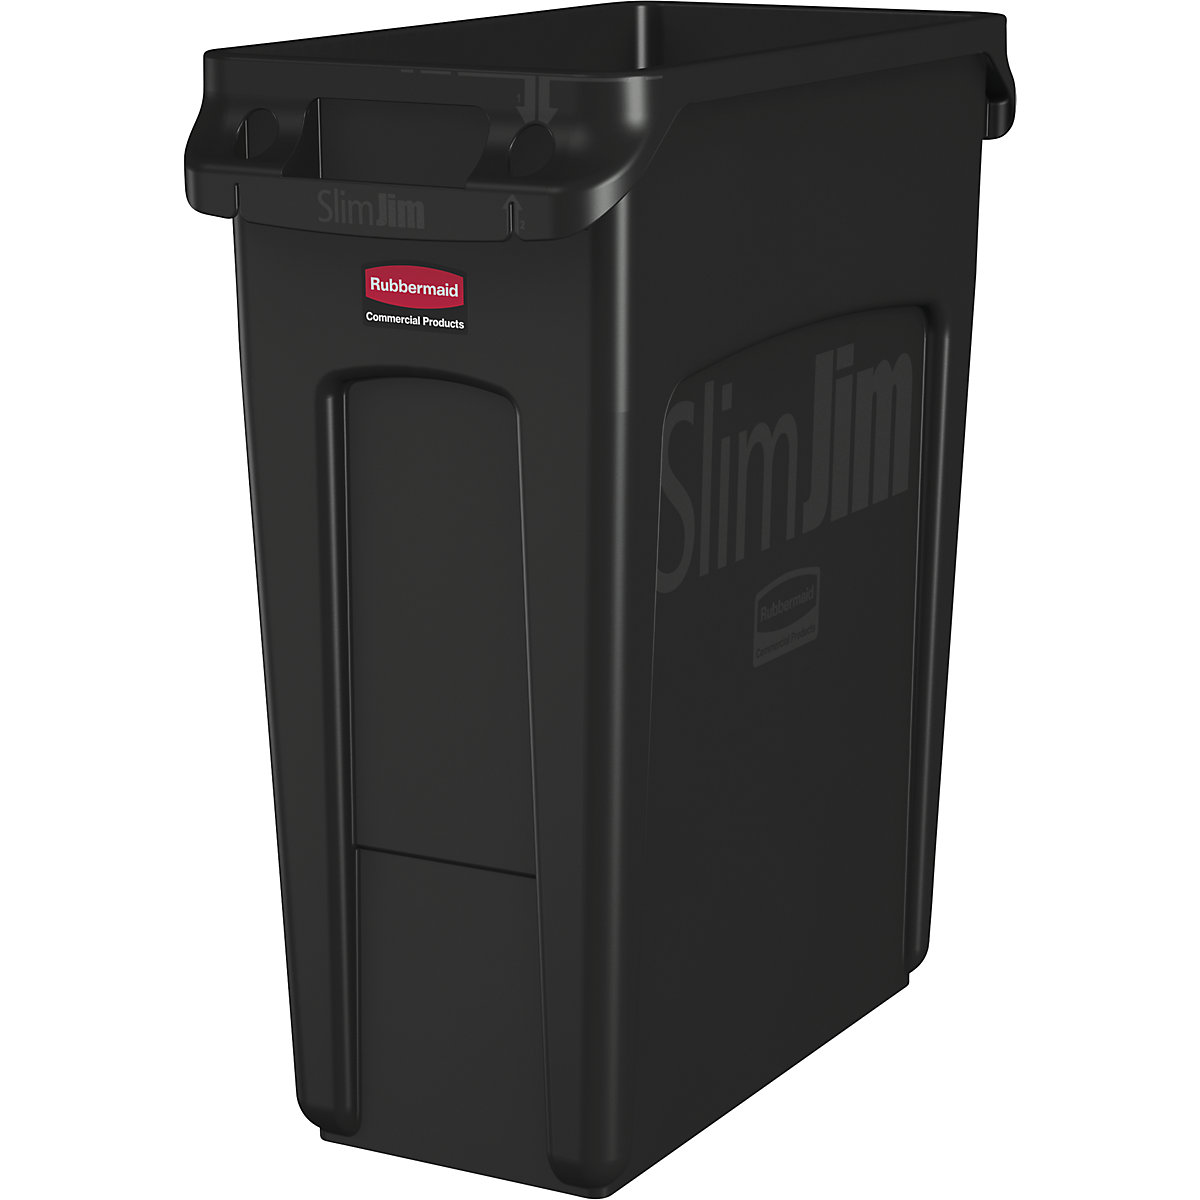 Recipiente para separar materiales/cubo de basura SLIM JIM® - Rubbermaid